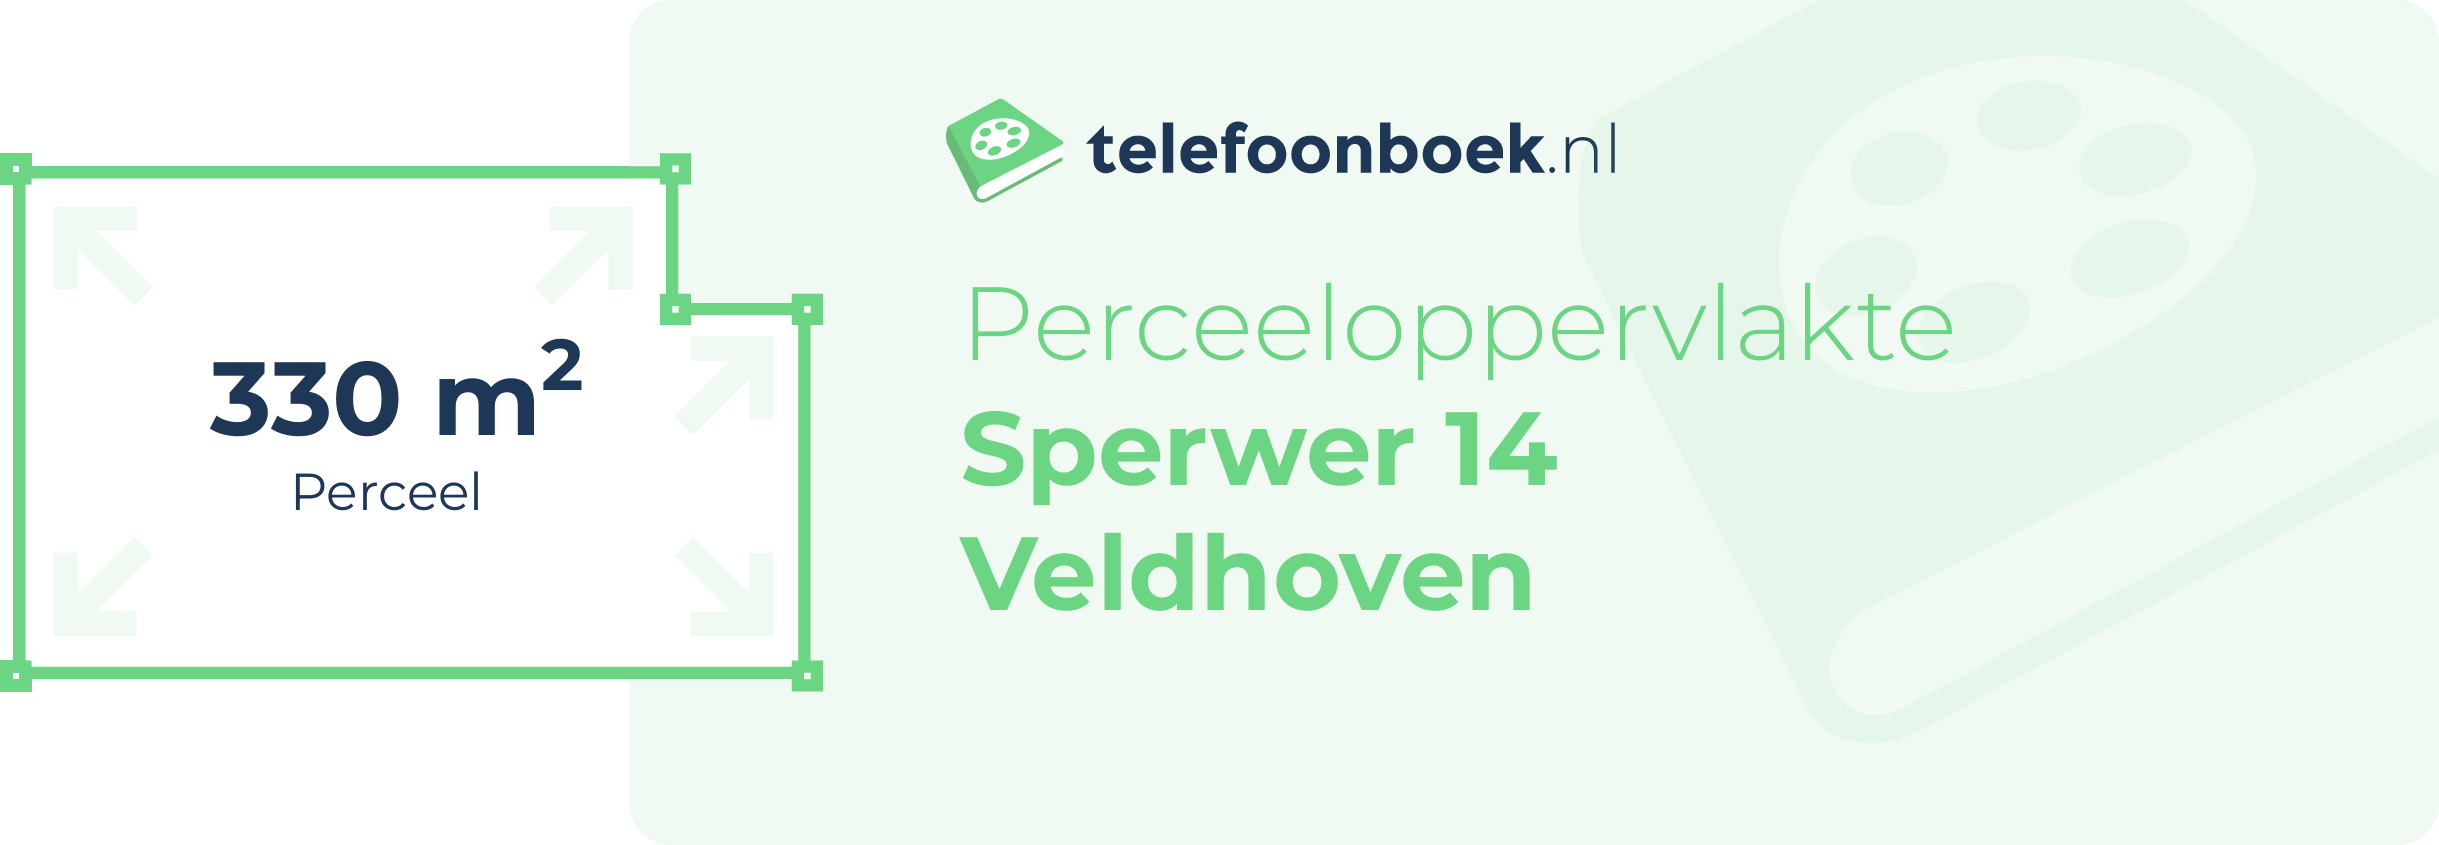 Perceeloppervlakte Sperwer 14 Veldhoven